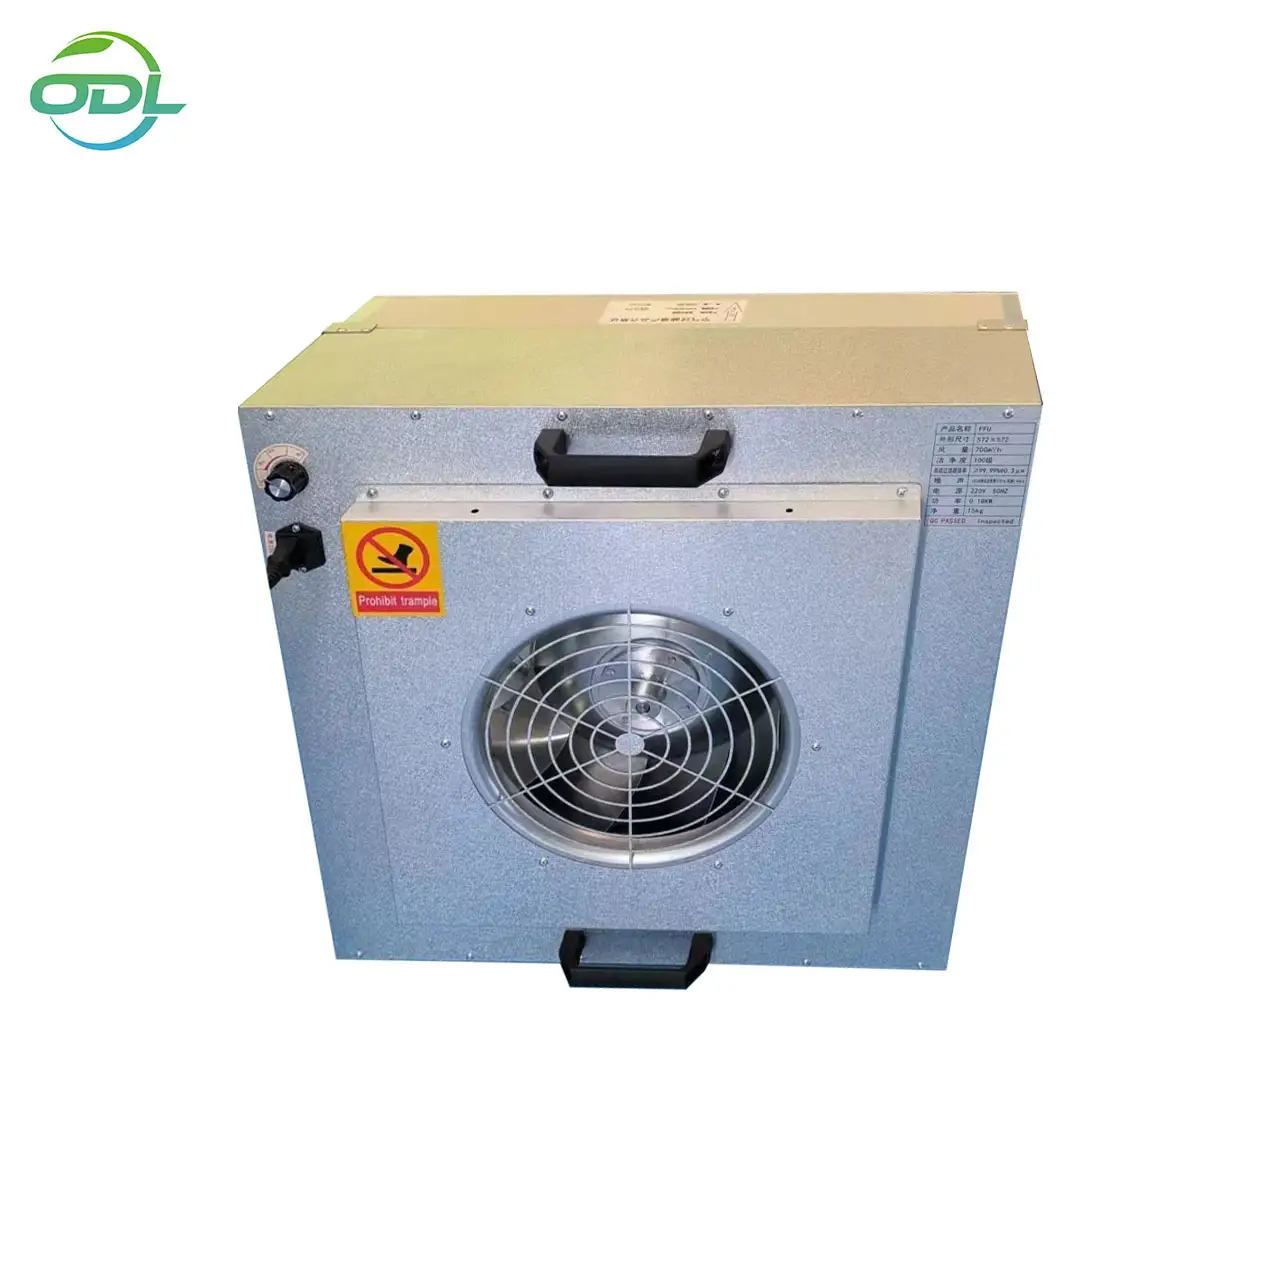 Personalización de gama alta Unidad de filtro de ventilador HEPA al por mayor personalizada FFU para diferentes tipos de sala limpia portátil